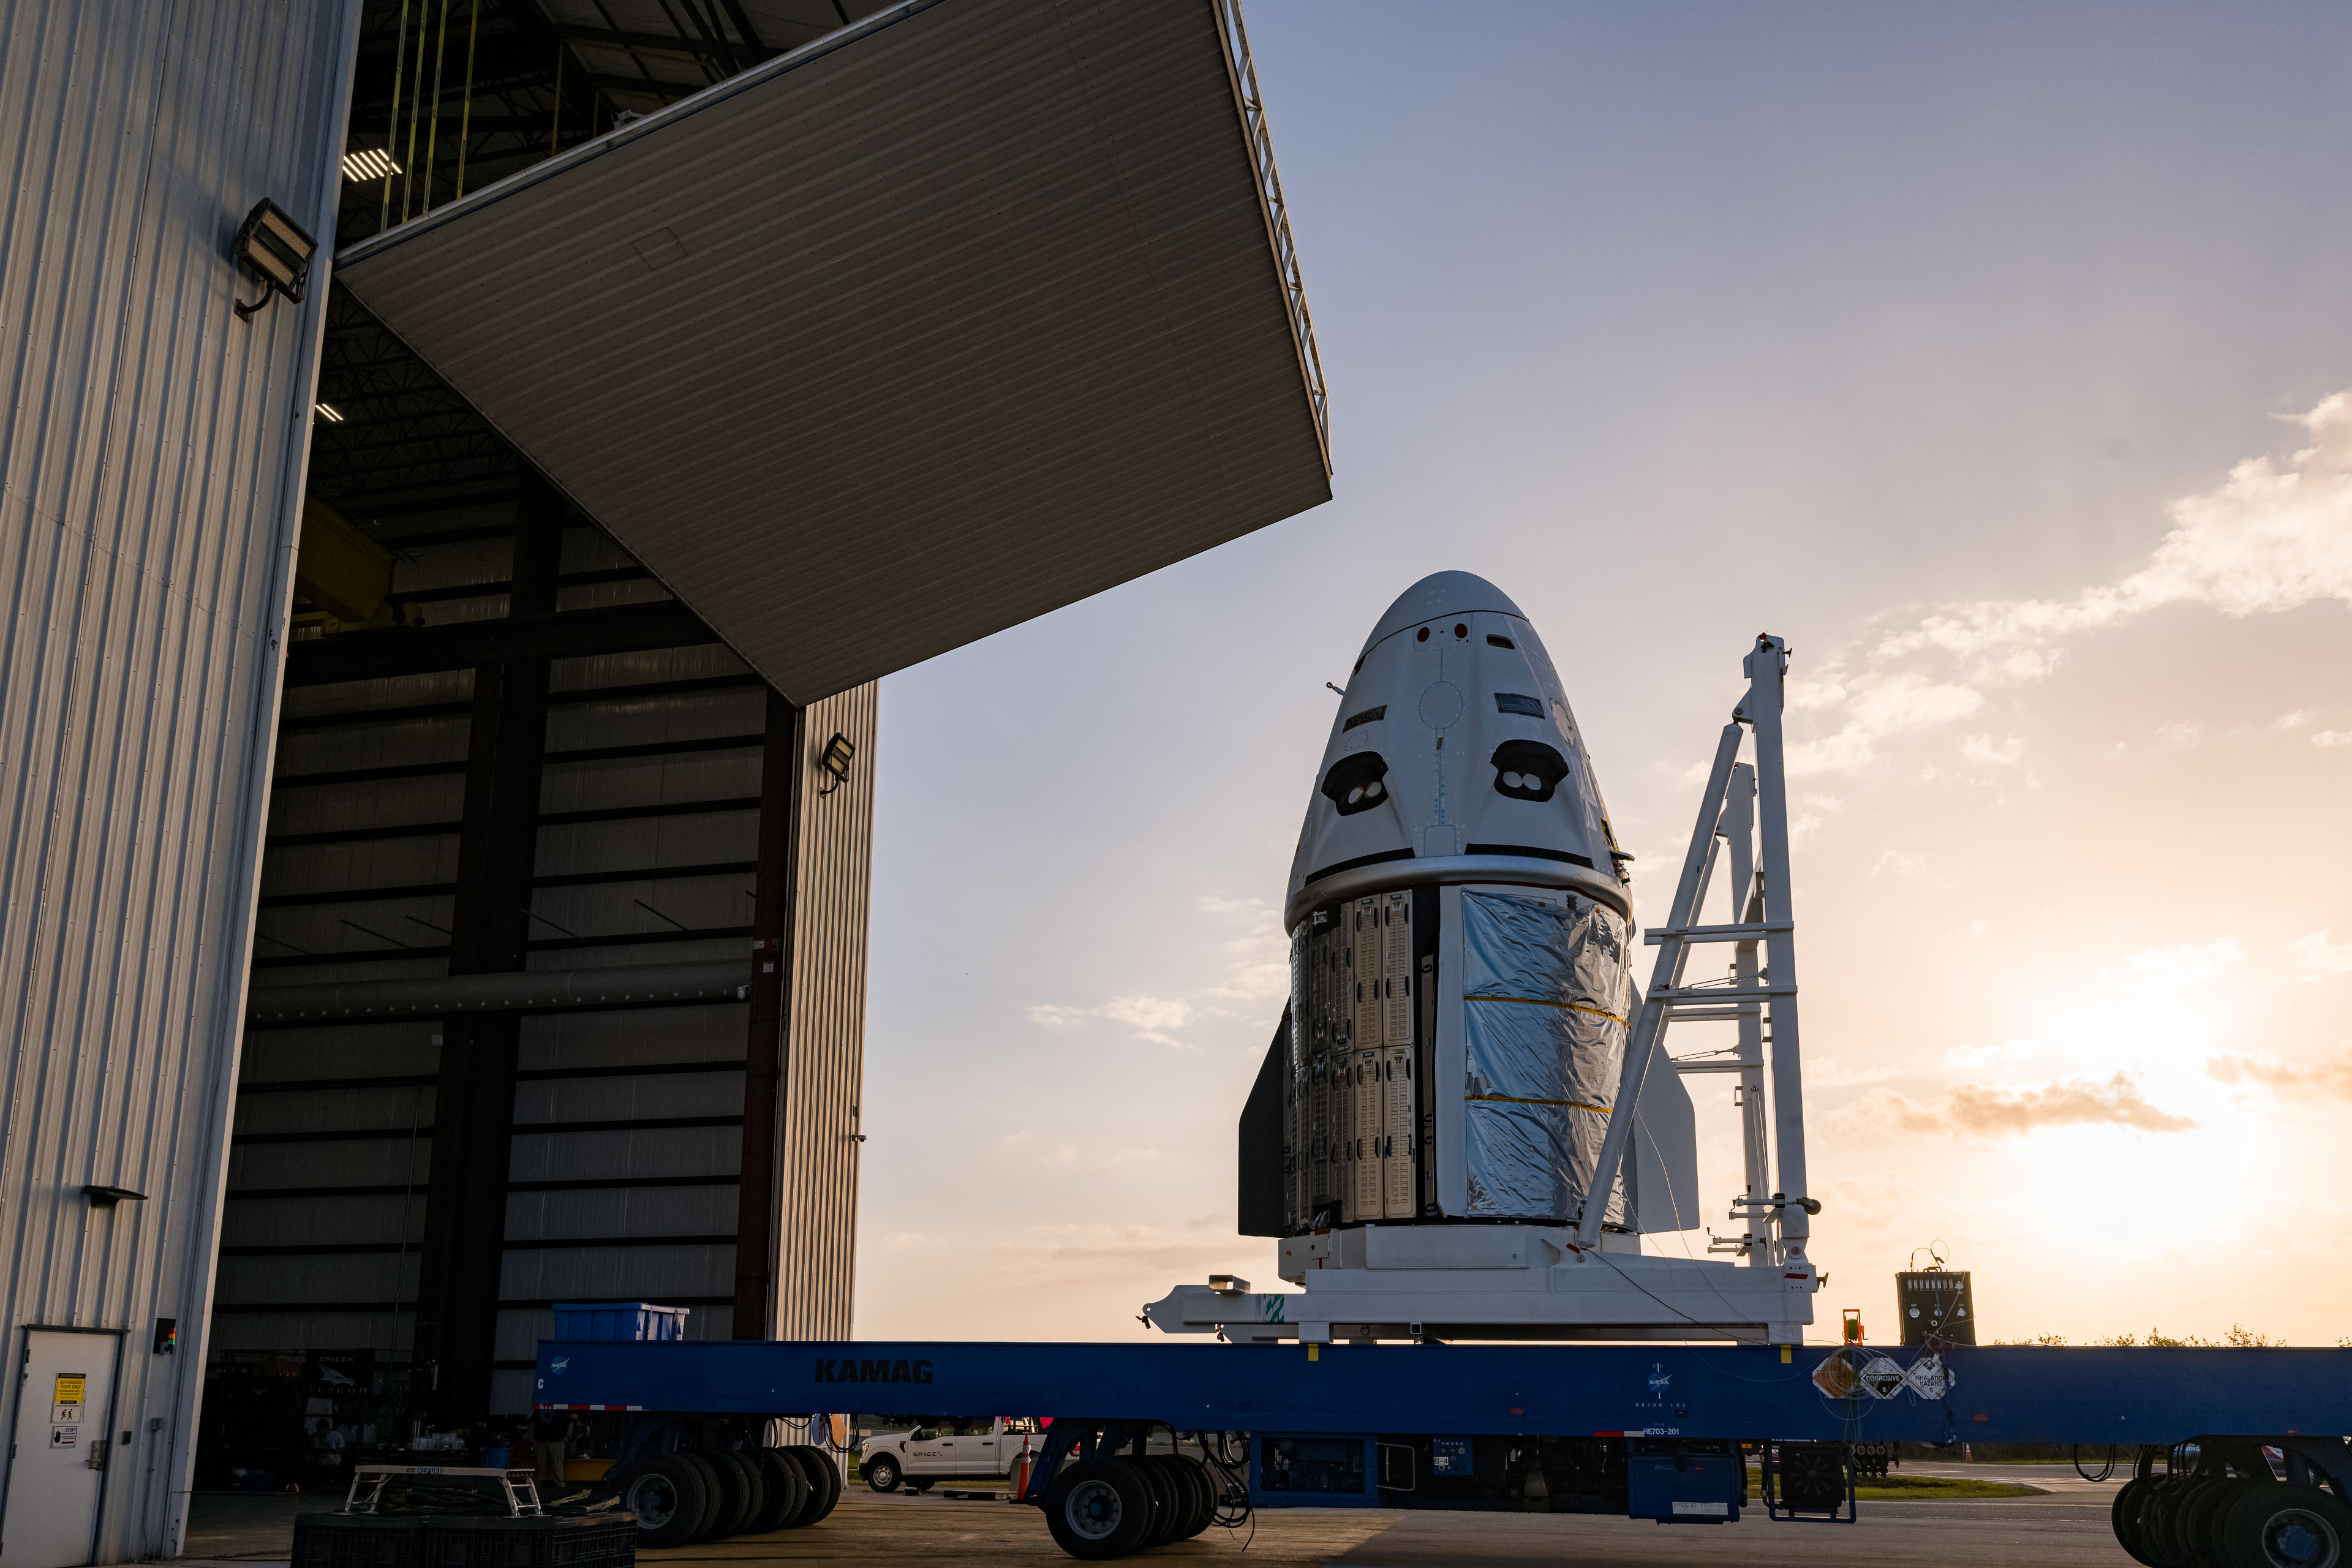 La cápsula SpaceX Dragon Endeavour, que llevará a Crew-6 a la Estación Espacial Internacional, se ve en el Pad 39A en el Centro Espacial Kennedy de la NASA en Florida.  SpaceX publicó esta foto en Twitter el 19 de febrero de 2023.